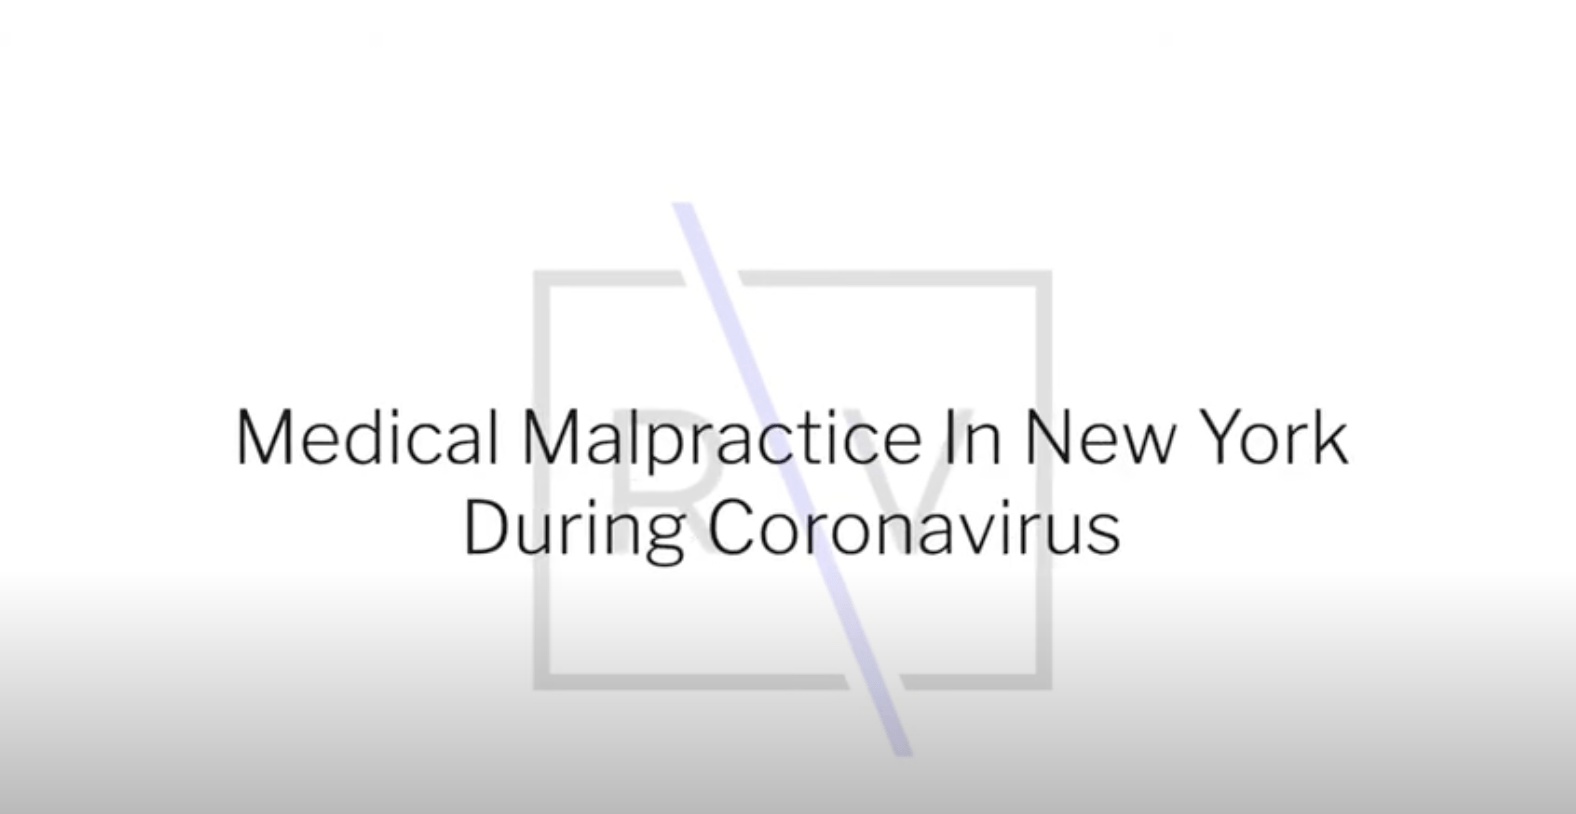 Medical Malpractice In New York During Coronavirus